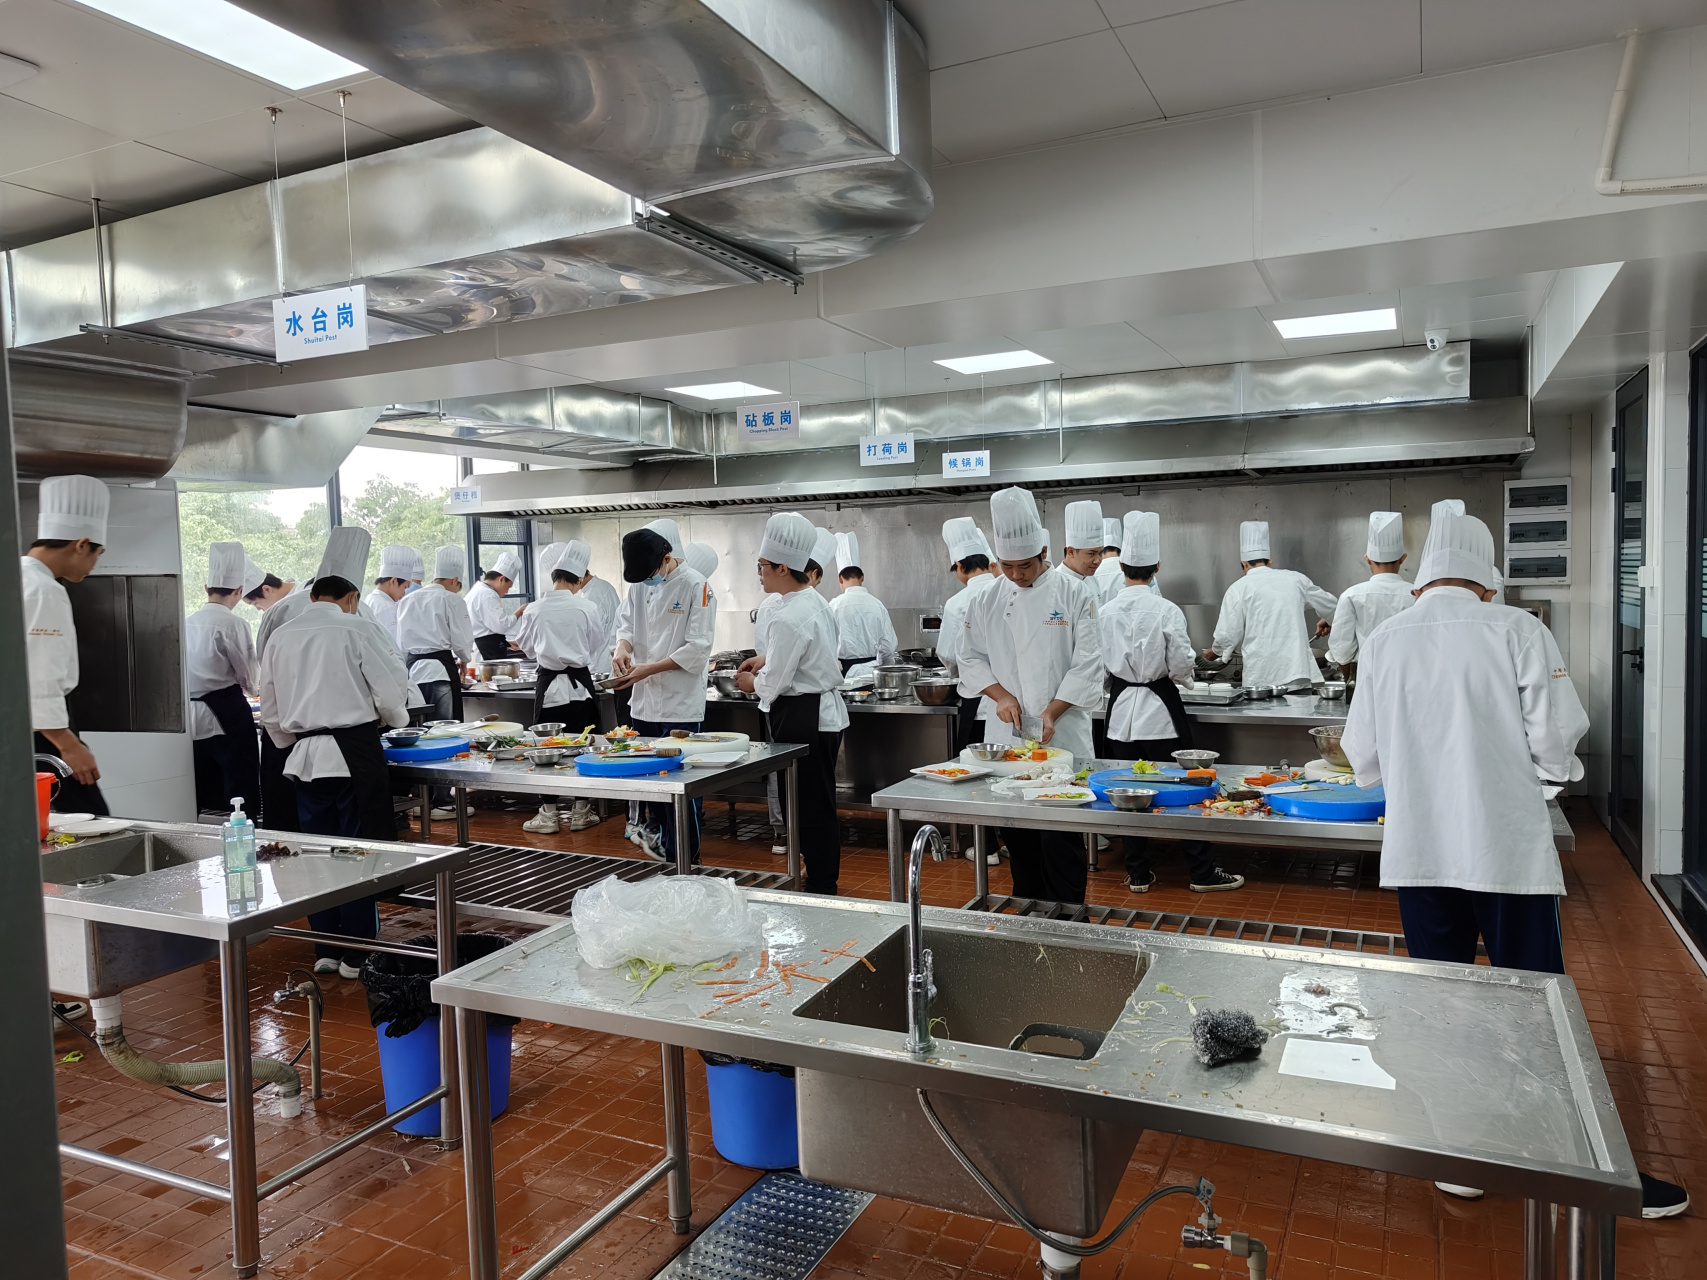 这里是学校烹饪专业全仿真的实操场所,所有烹饪设备按照酒店后厨标准